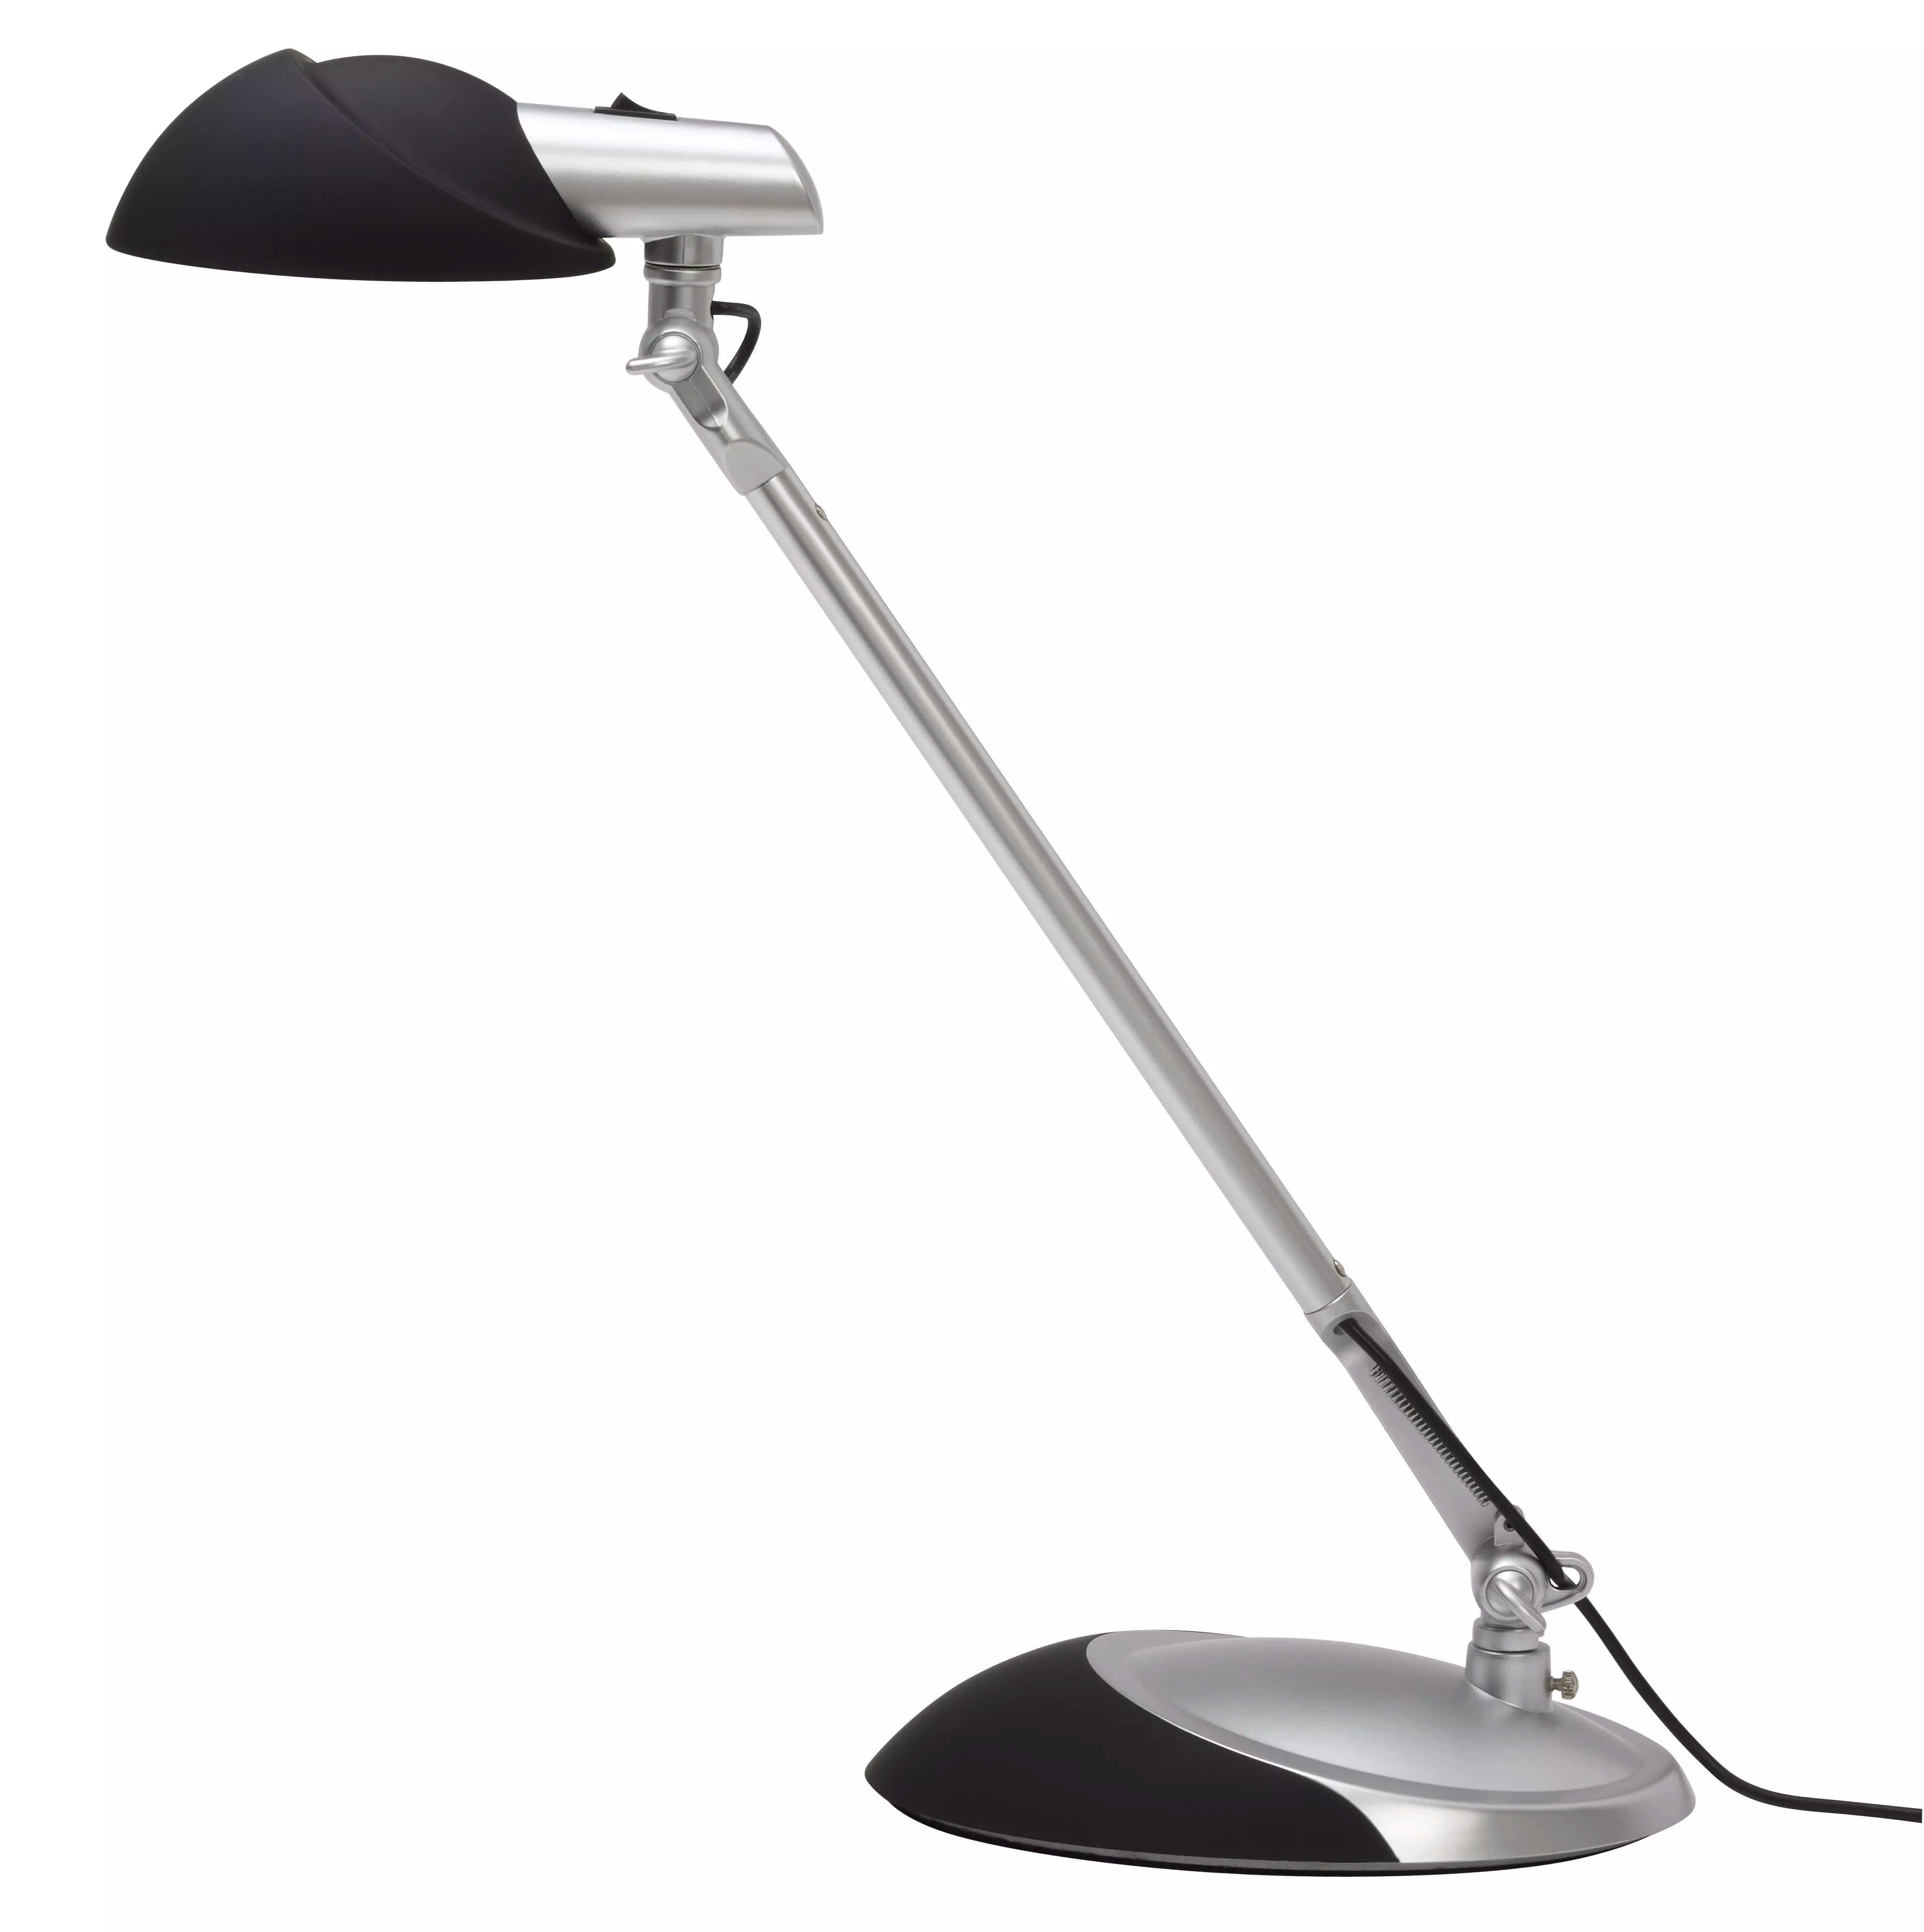  LED-Light - arbetslampor, huvudvärk, kontor - ErgoFinland